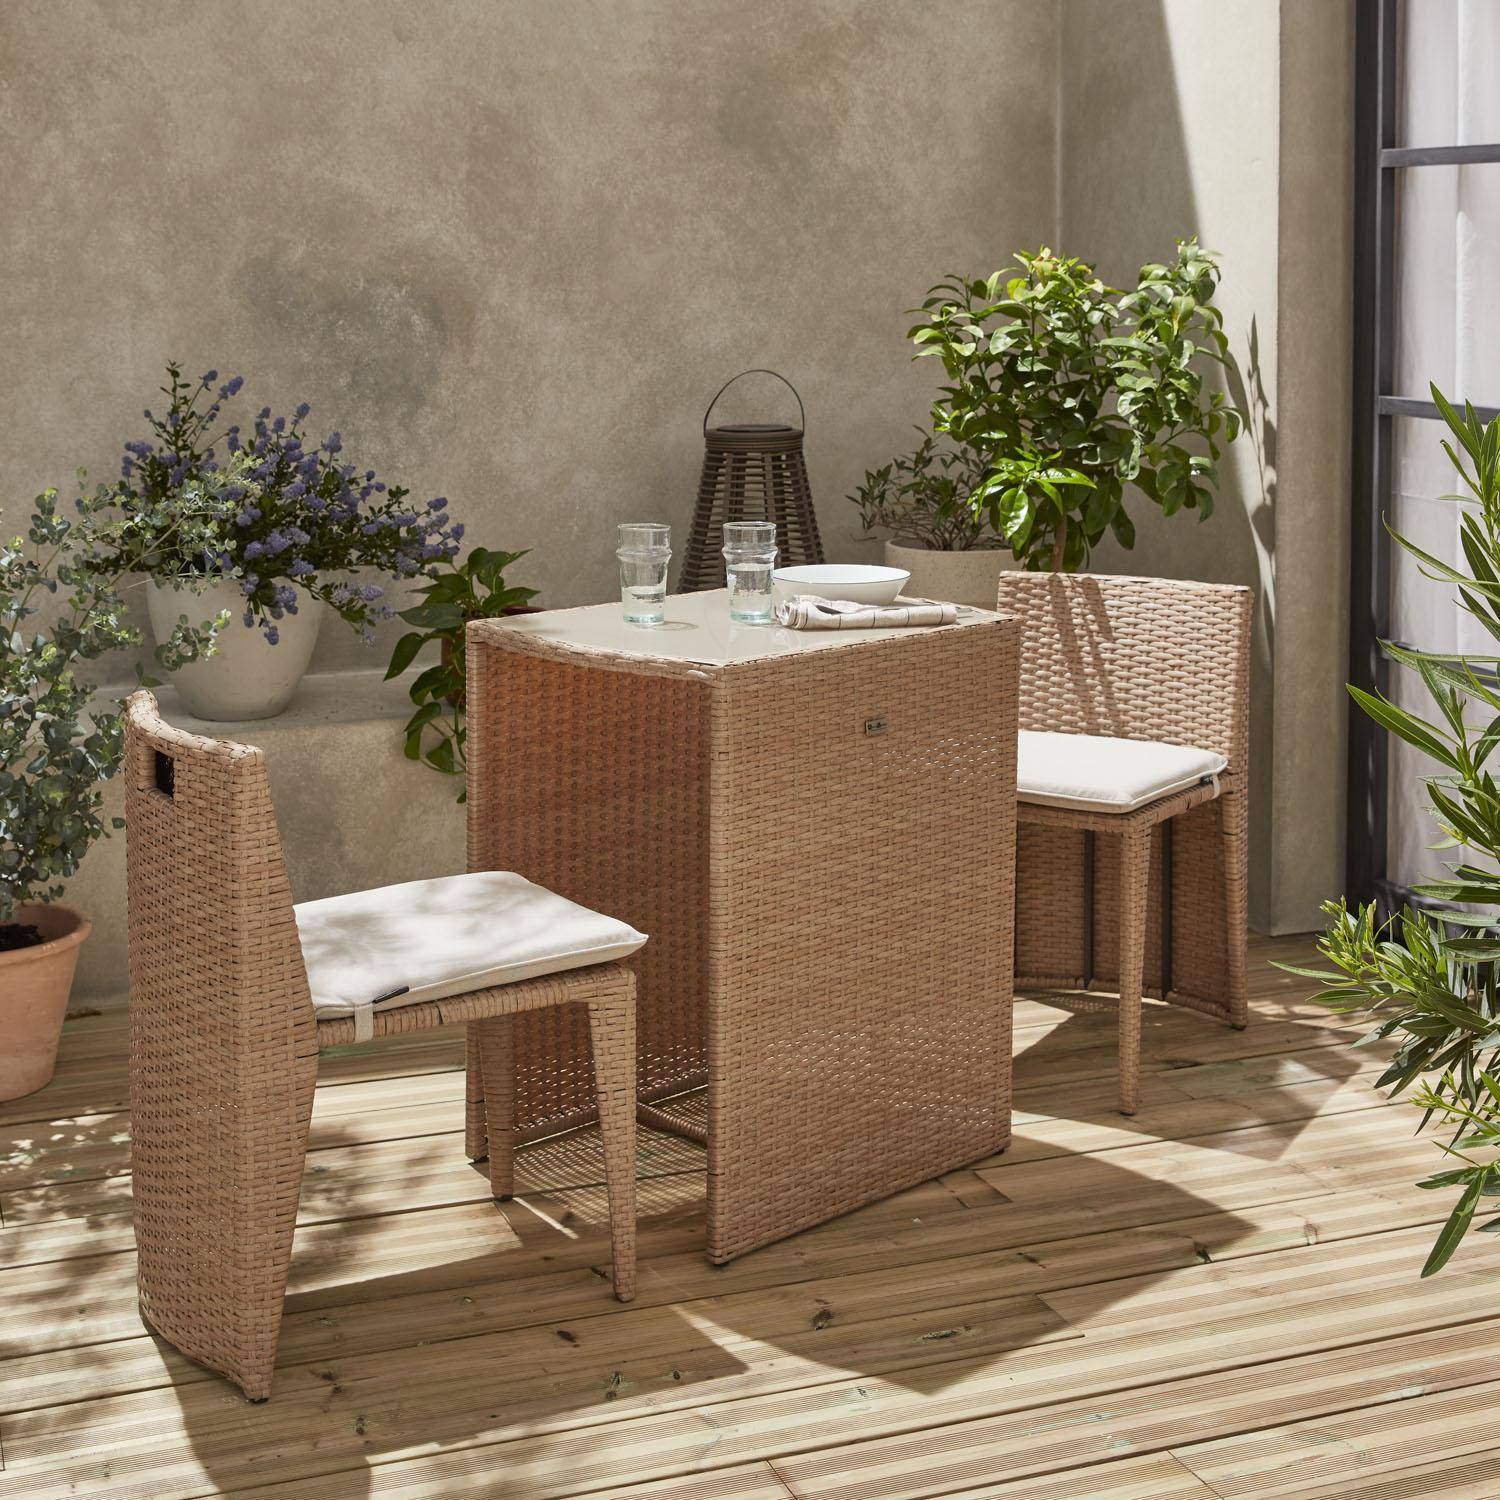 Mesa de jardín de resina tejida - Doppio - Natural, cojines beige - 2 asientos, empotrados, para balcón o terraza pequeña Photo1